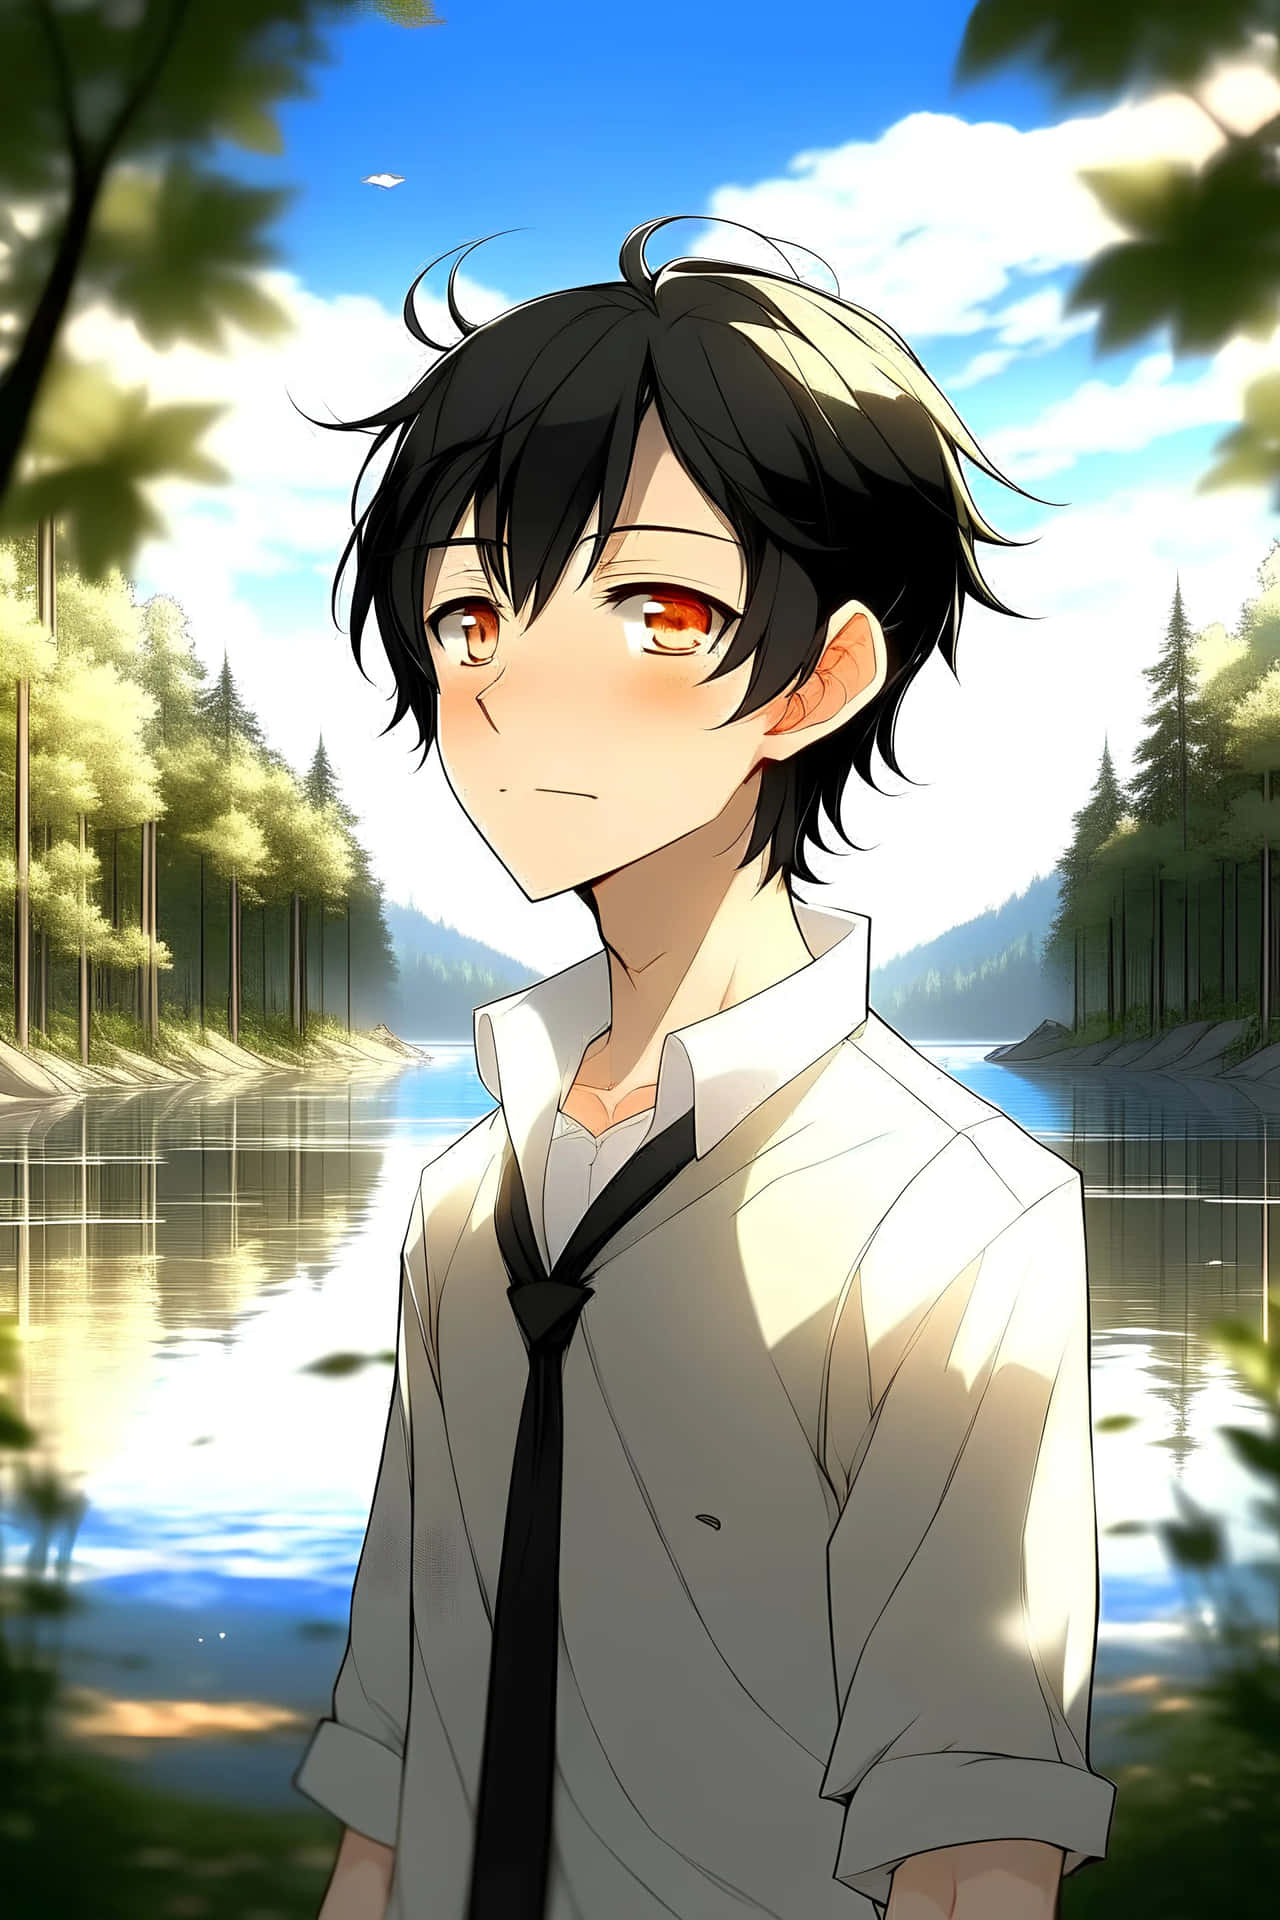 Anime Boy Black Hair Lakeside Portrait Wallpaper